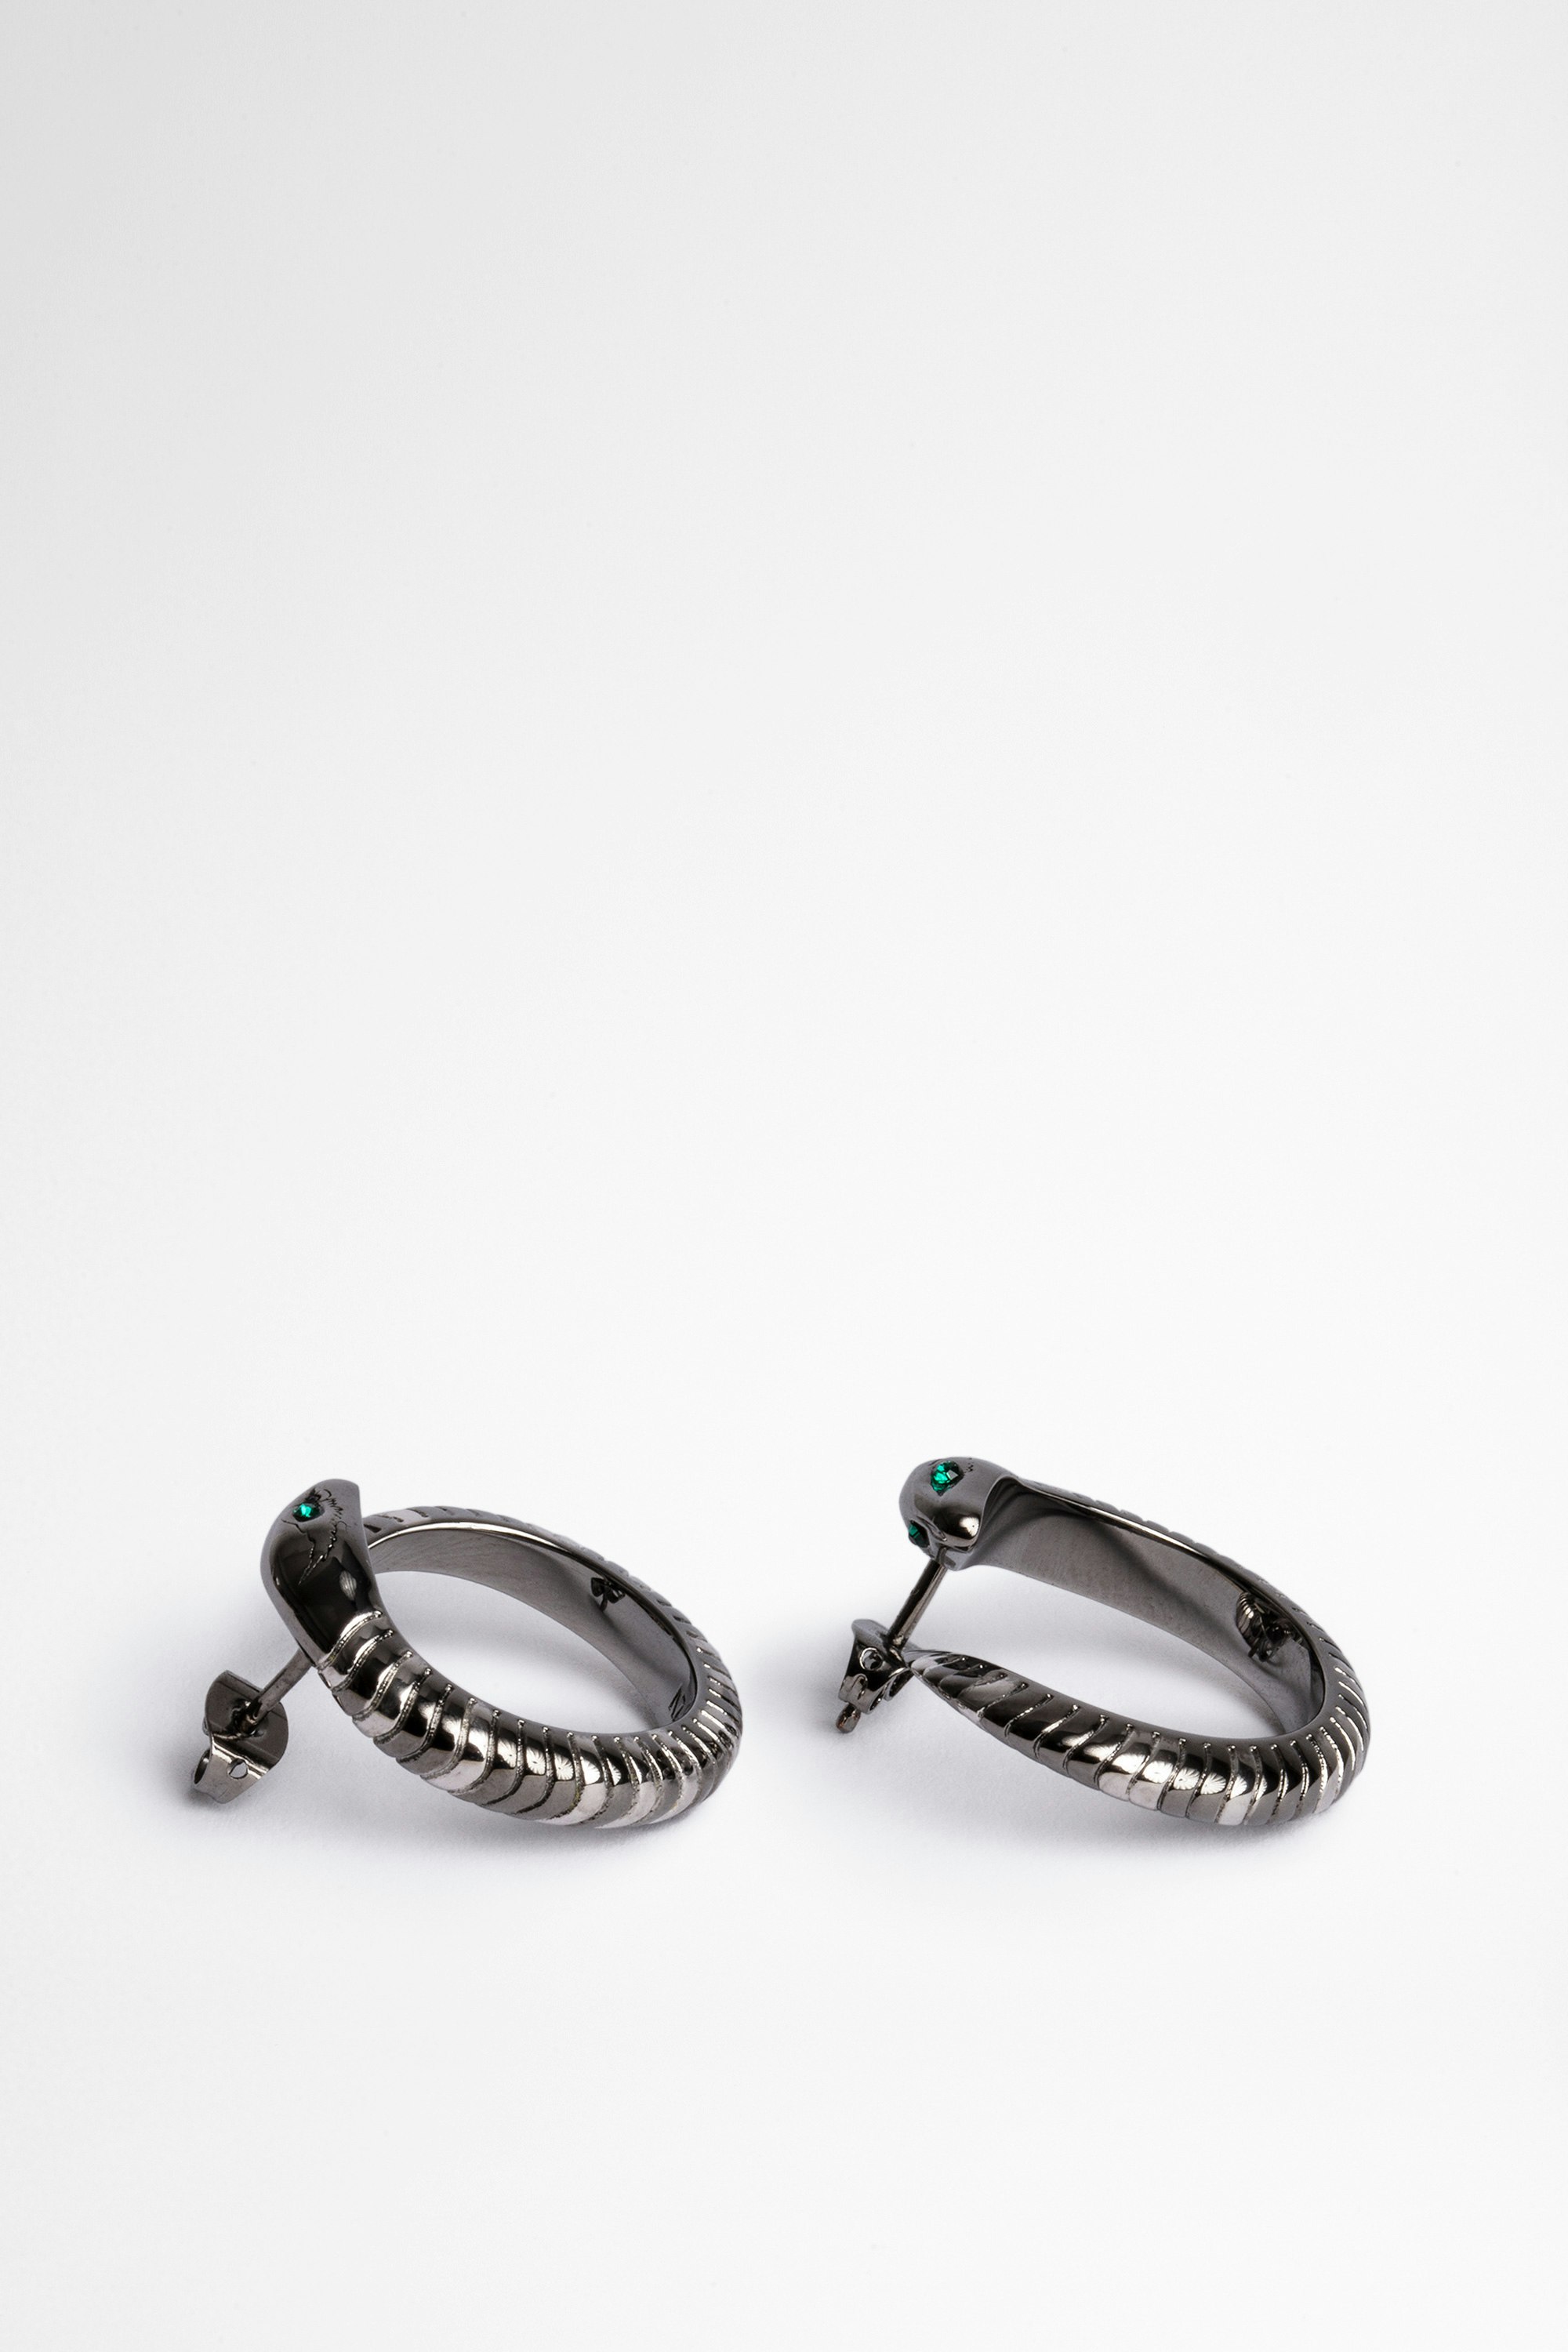 Snake Hoop Earrings - Women's silver-tone brass snake earrings